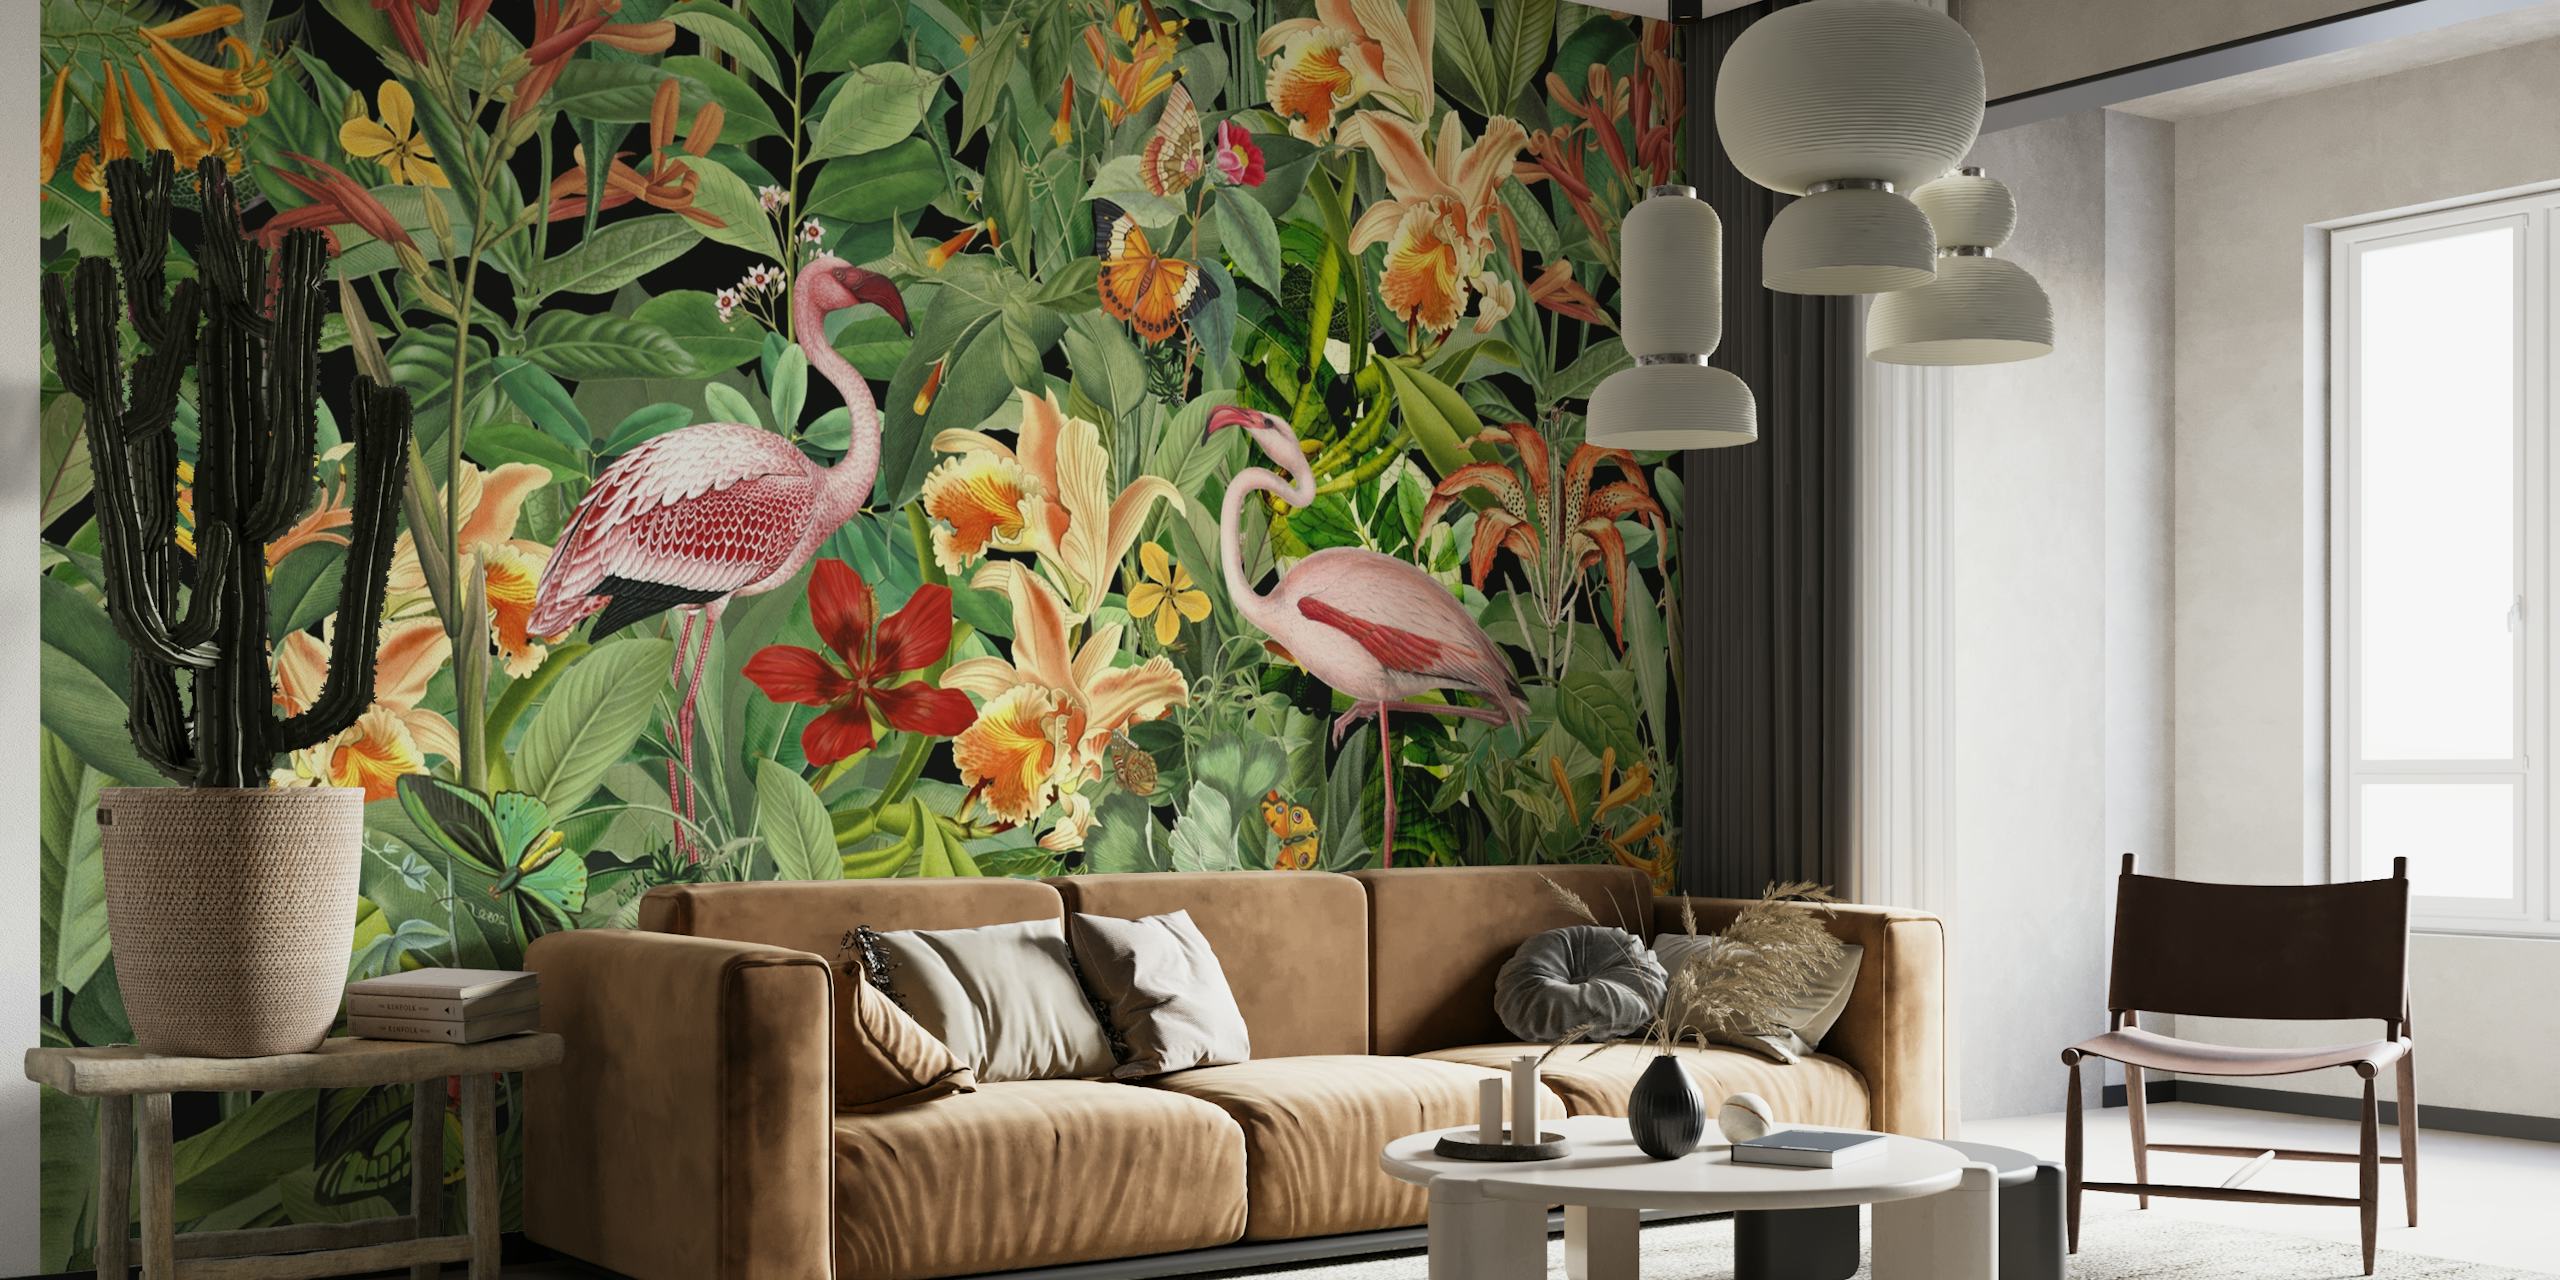 Tropical Flamingo Jungle papel pintado